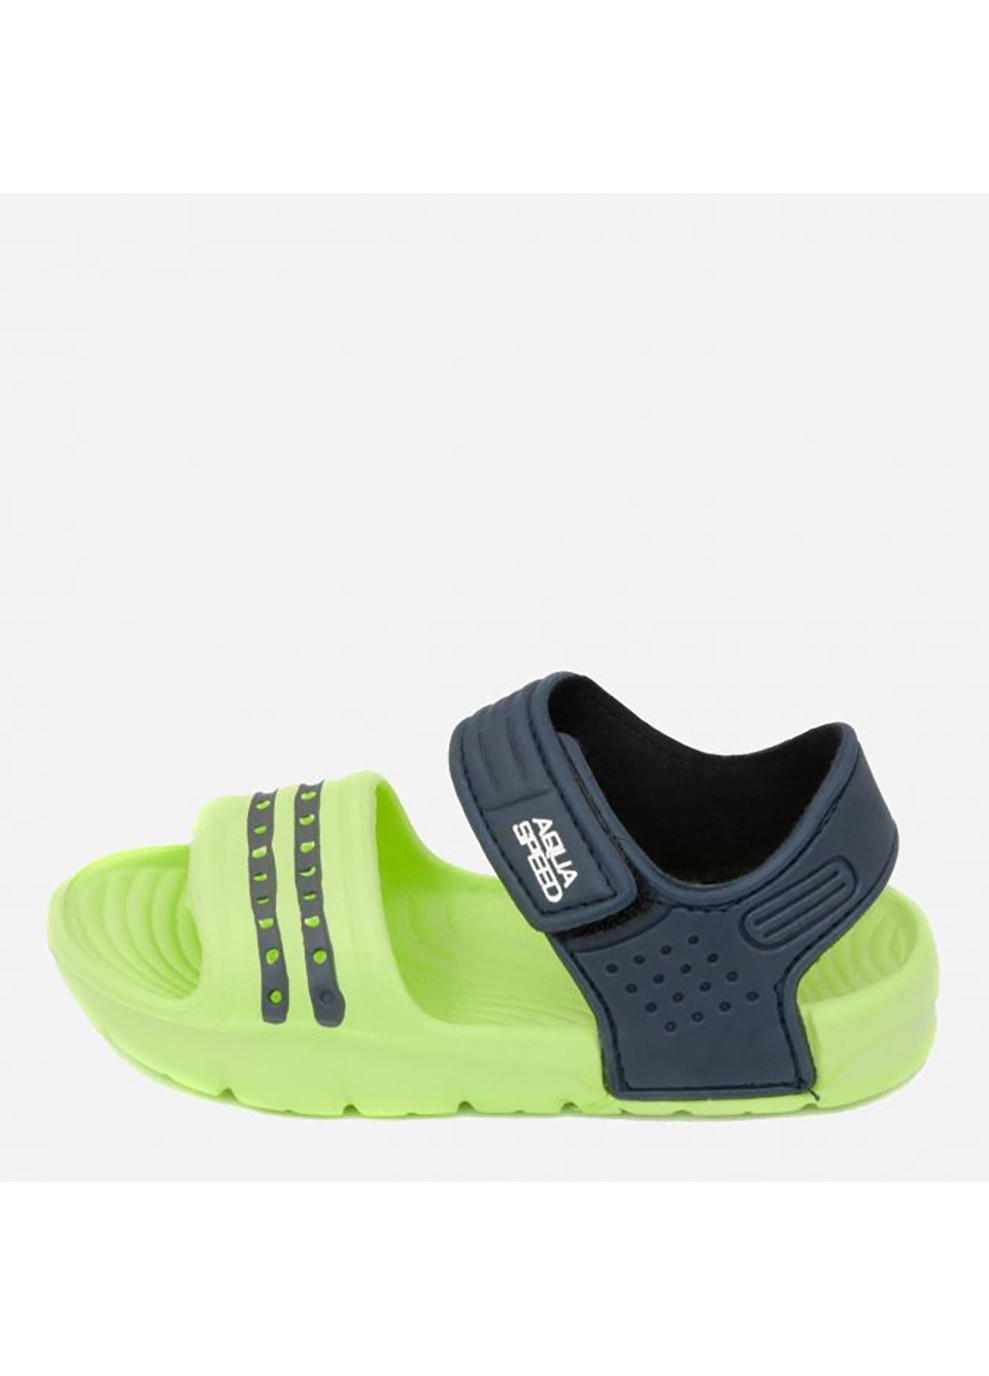 Зеленые спортивные сандали noli 6945 зеленый, темно-синий Aqua Speed